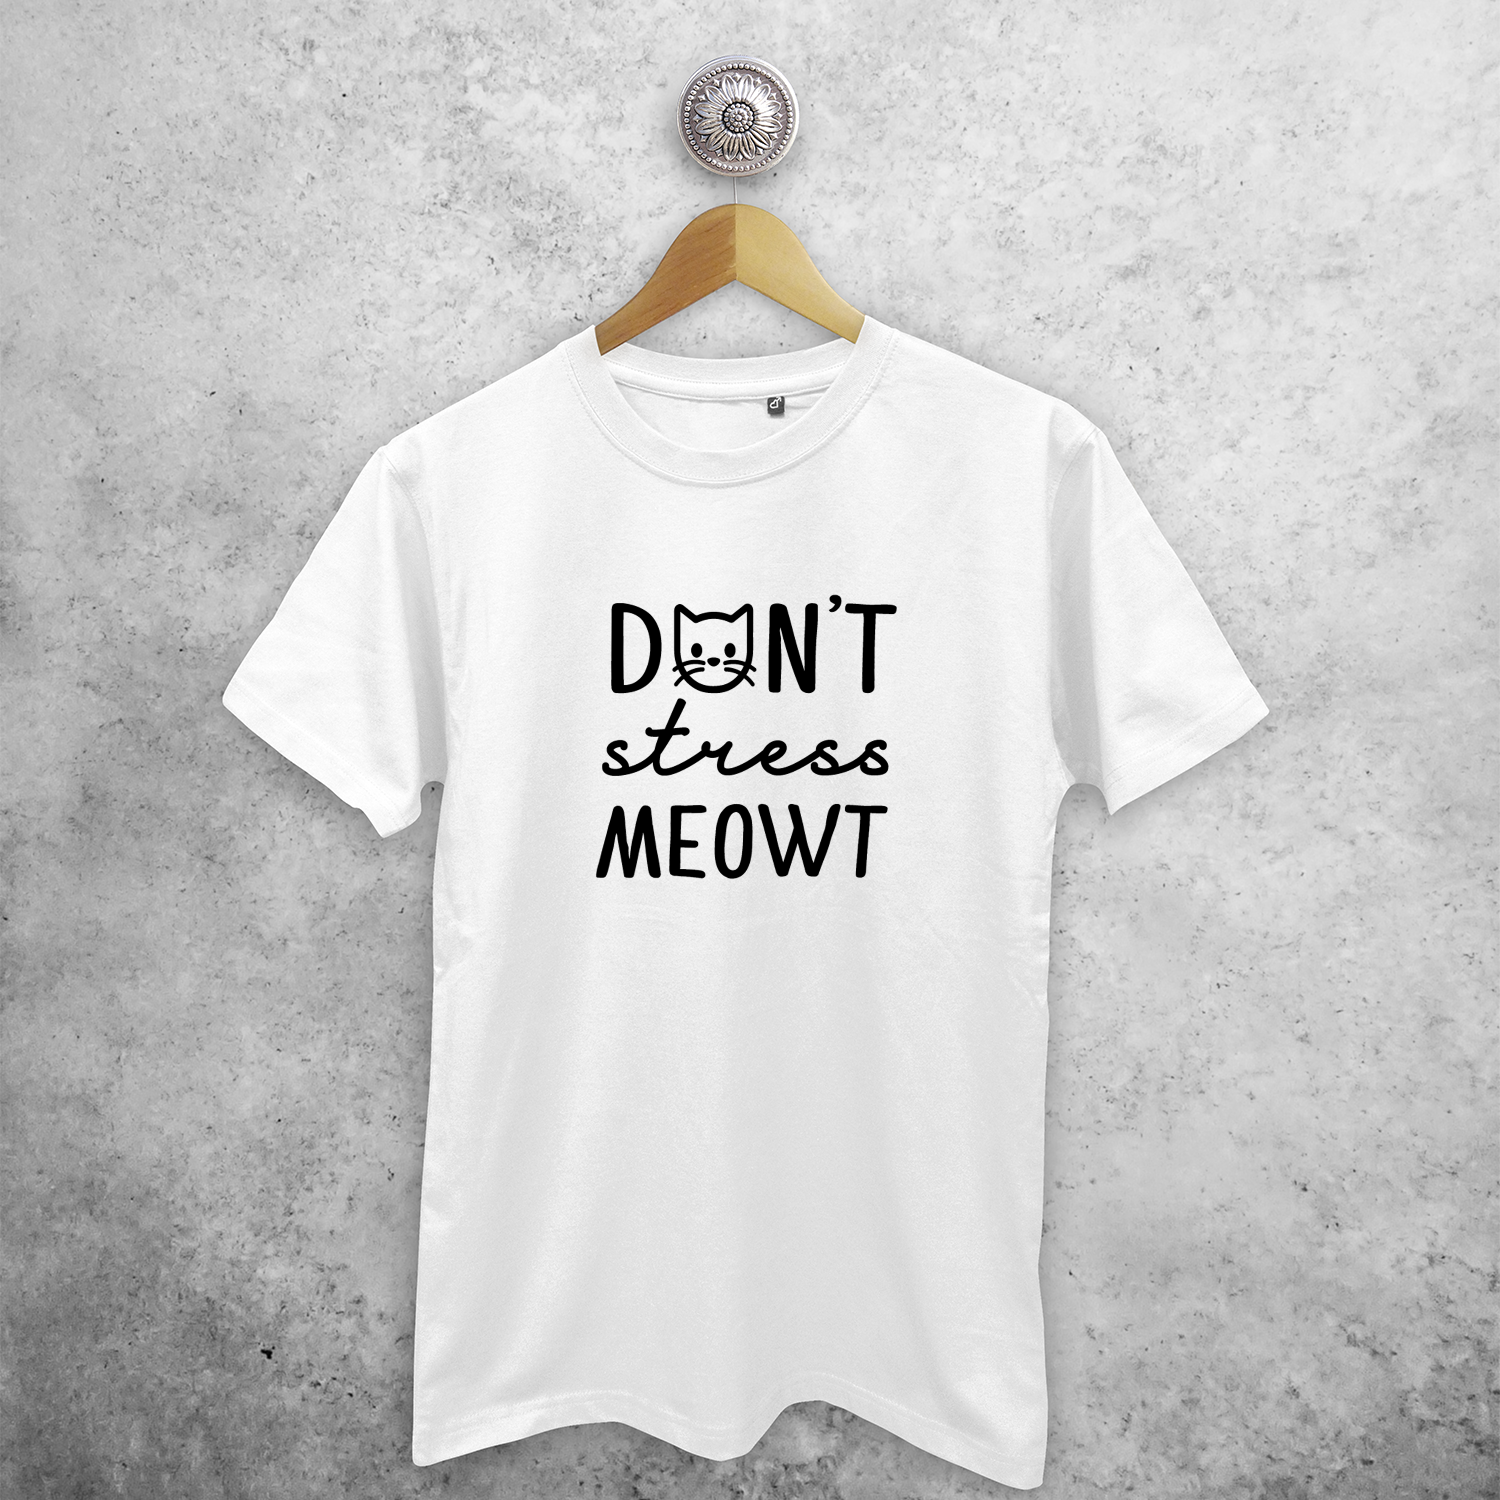 Don't stress meowt' volwassene shirt